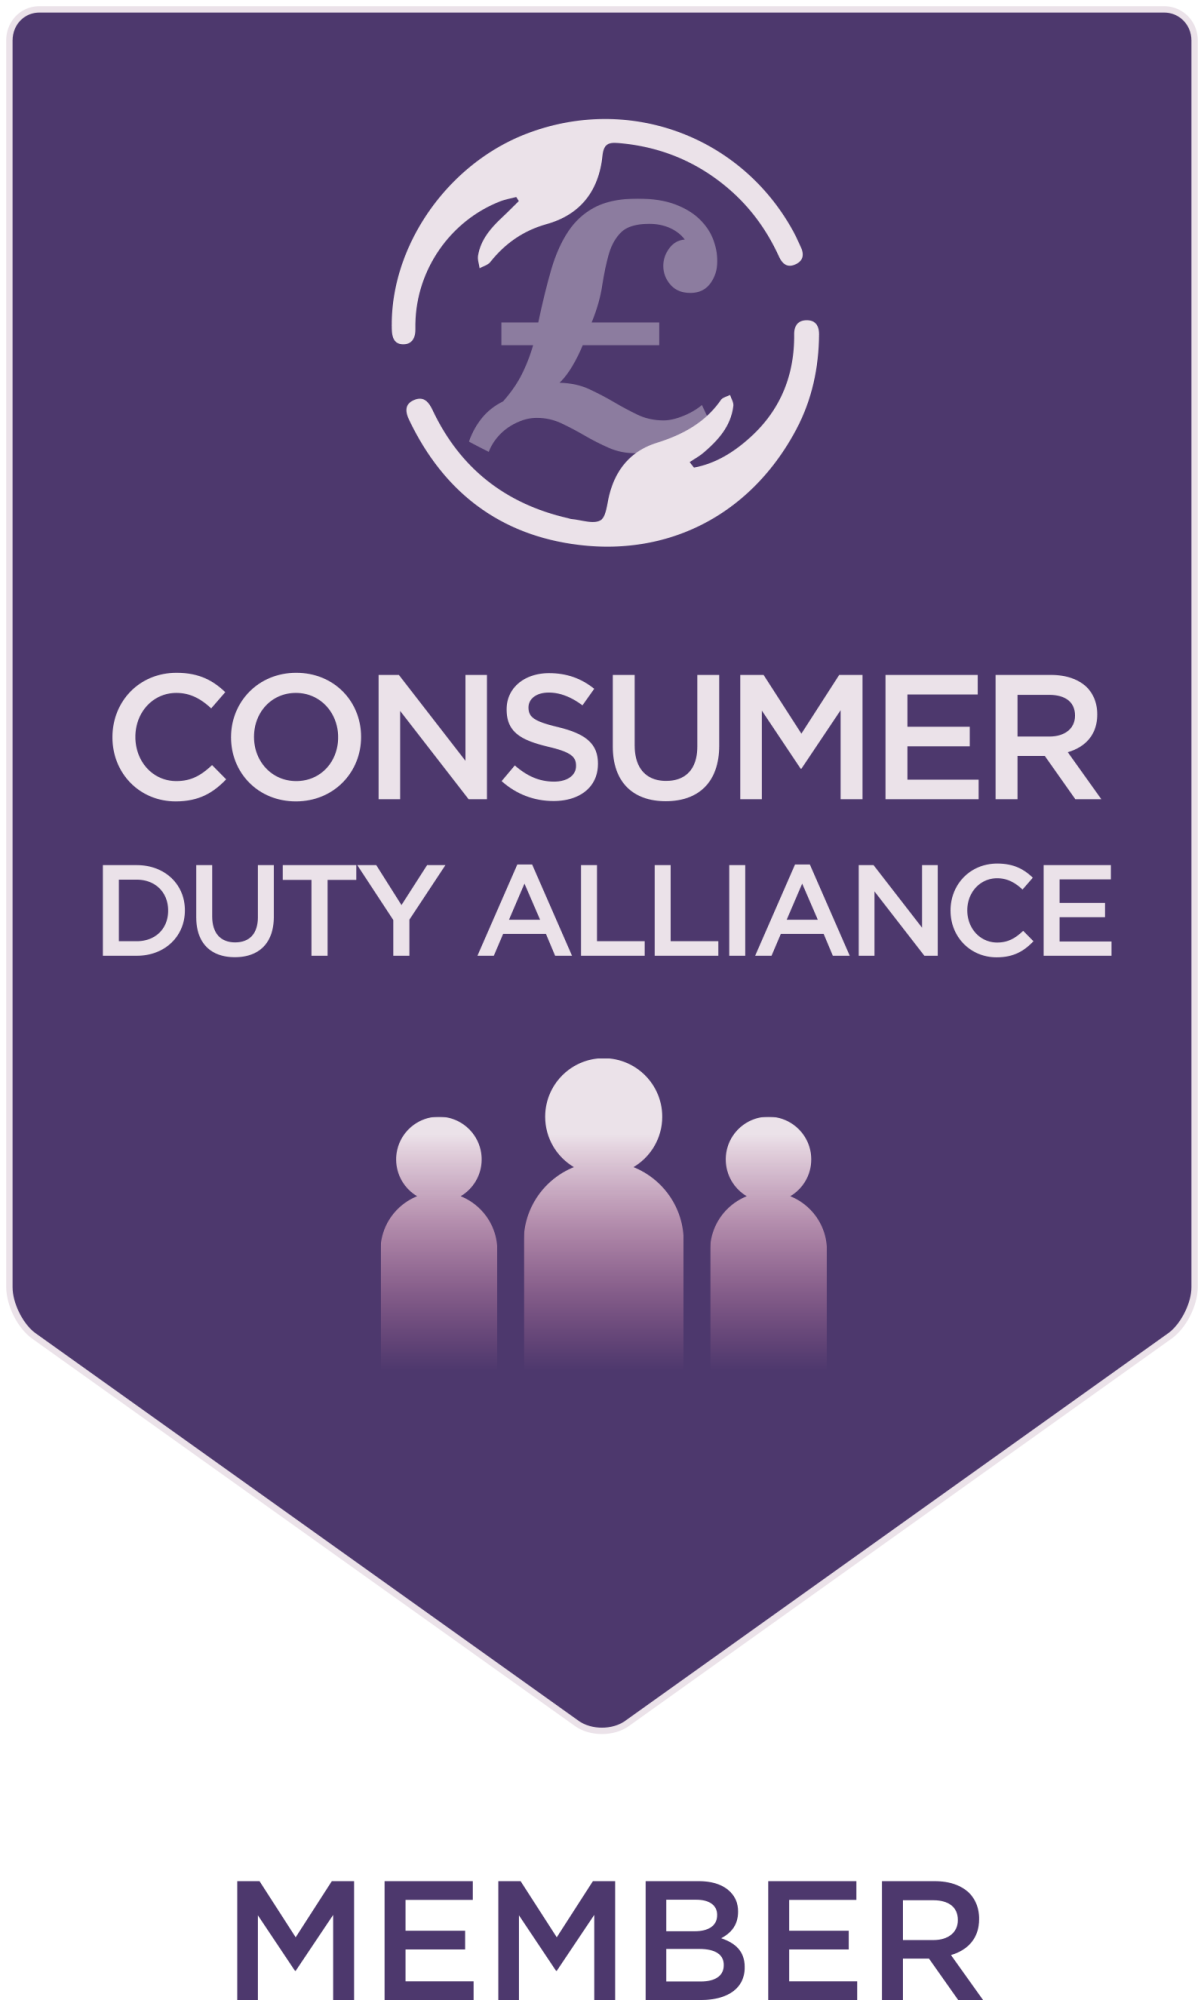 Consumer Duty Allowance Member badge